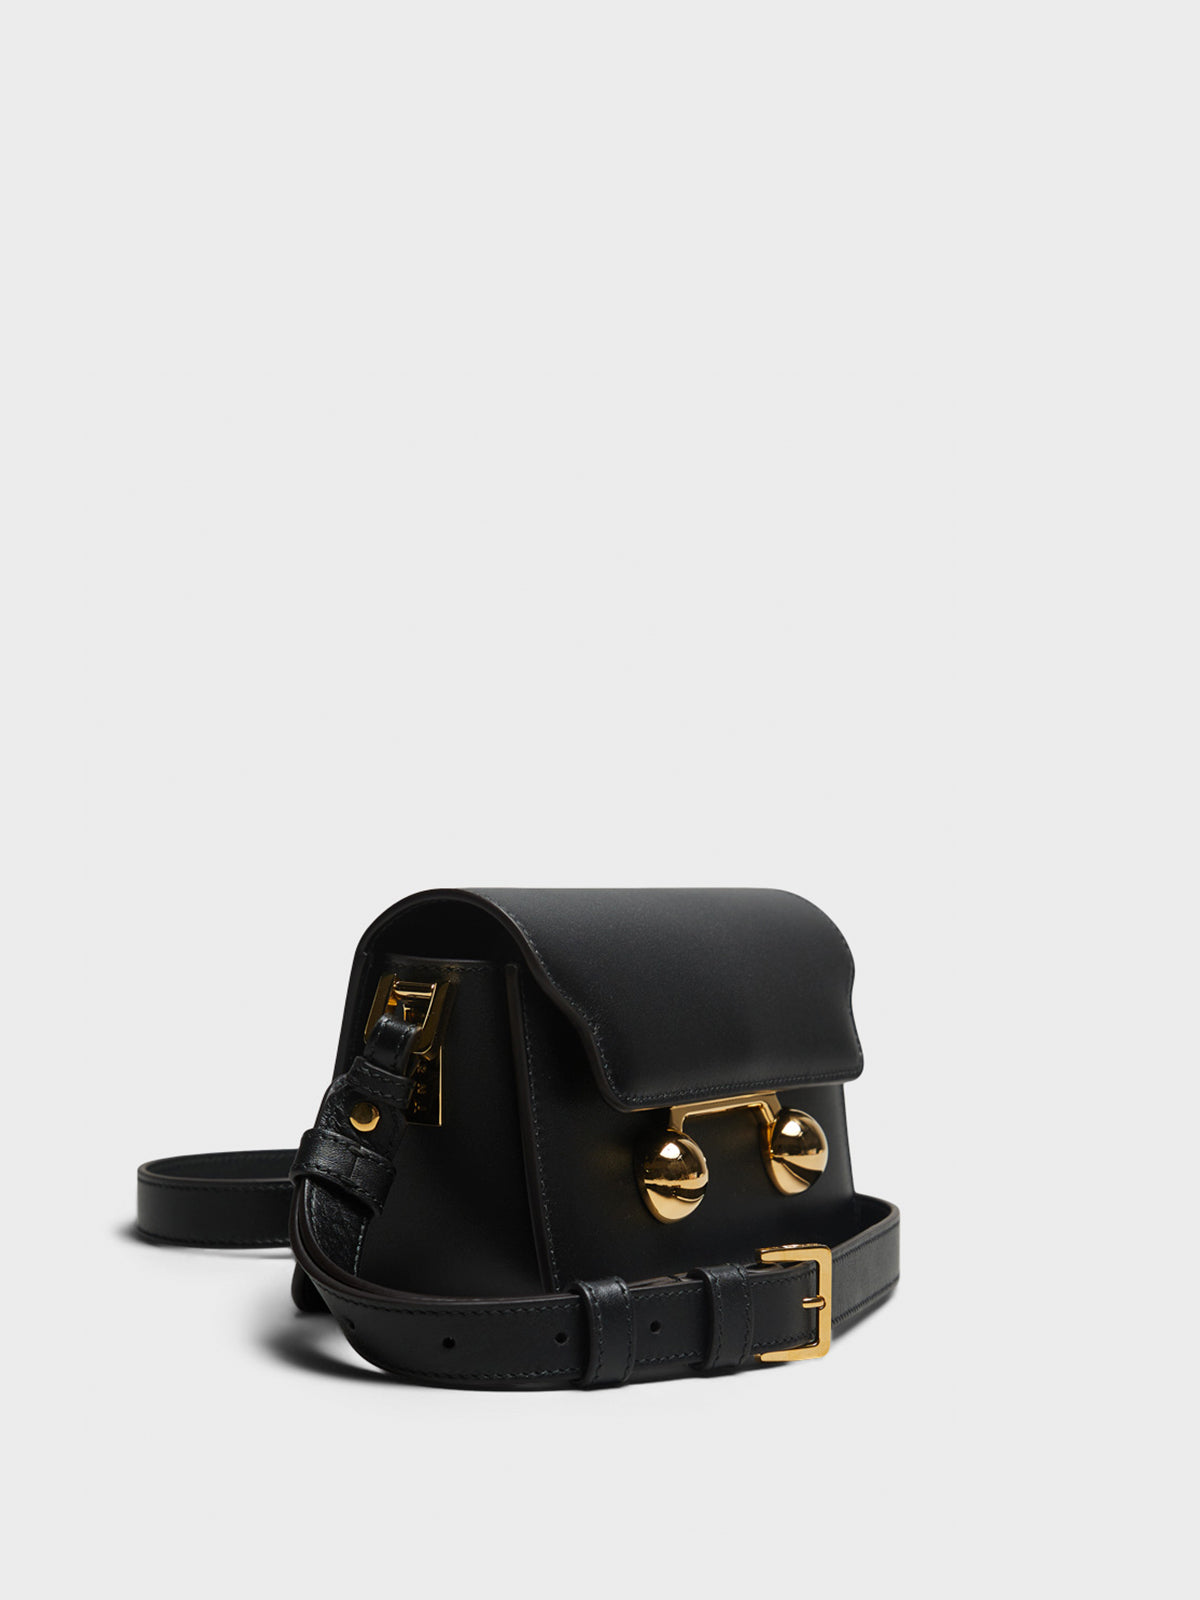 Trunkaroo Mini Shoulder Bag in Black